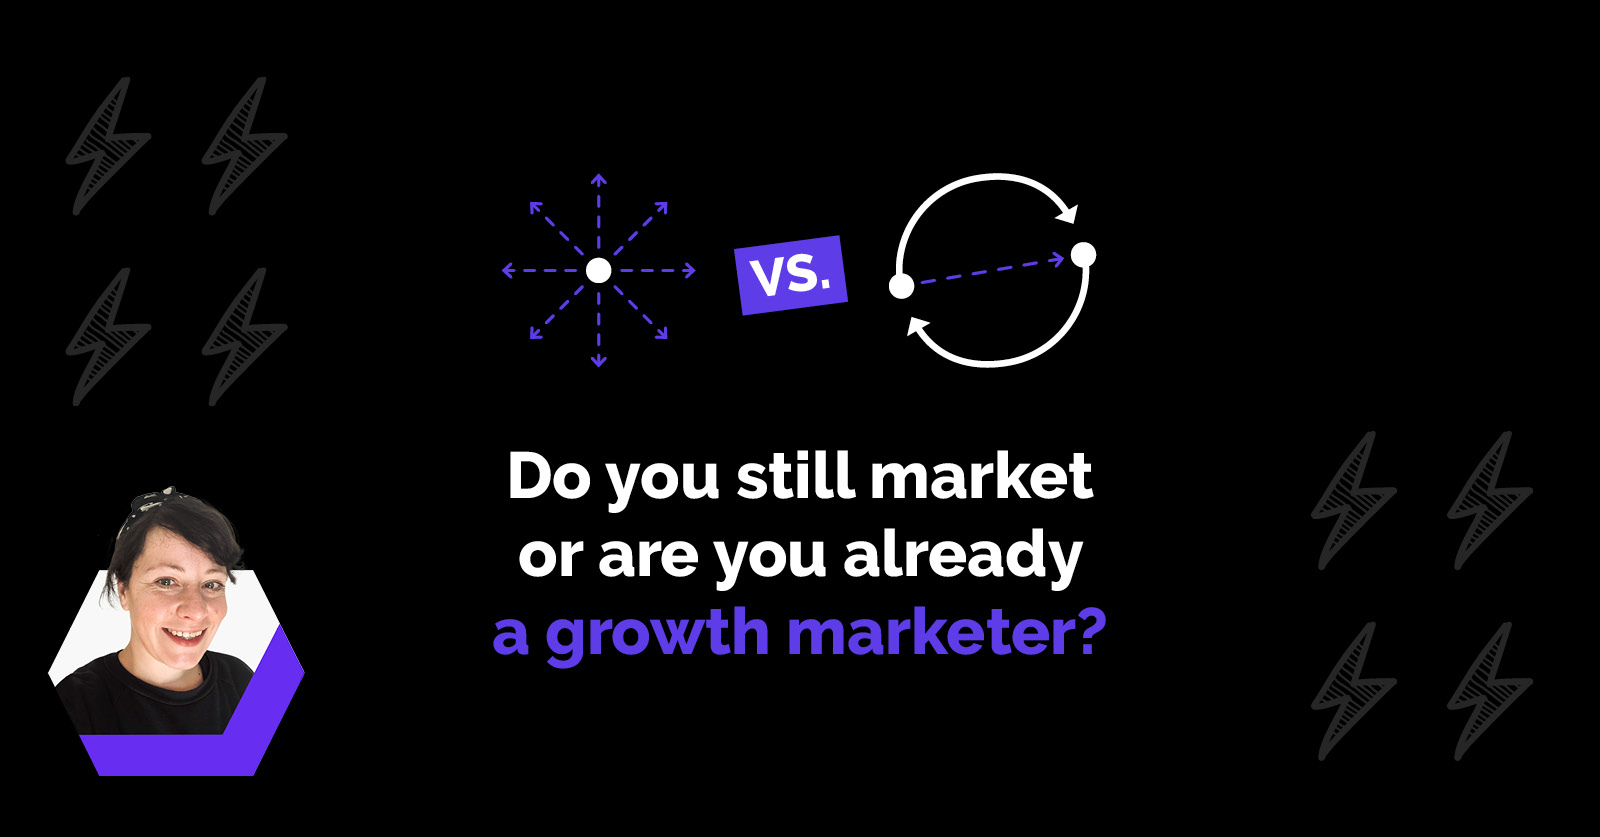 Growth Marketing Definition